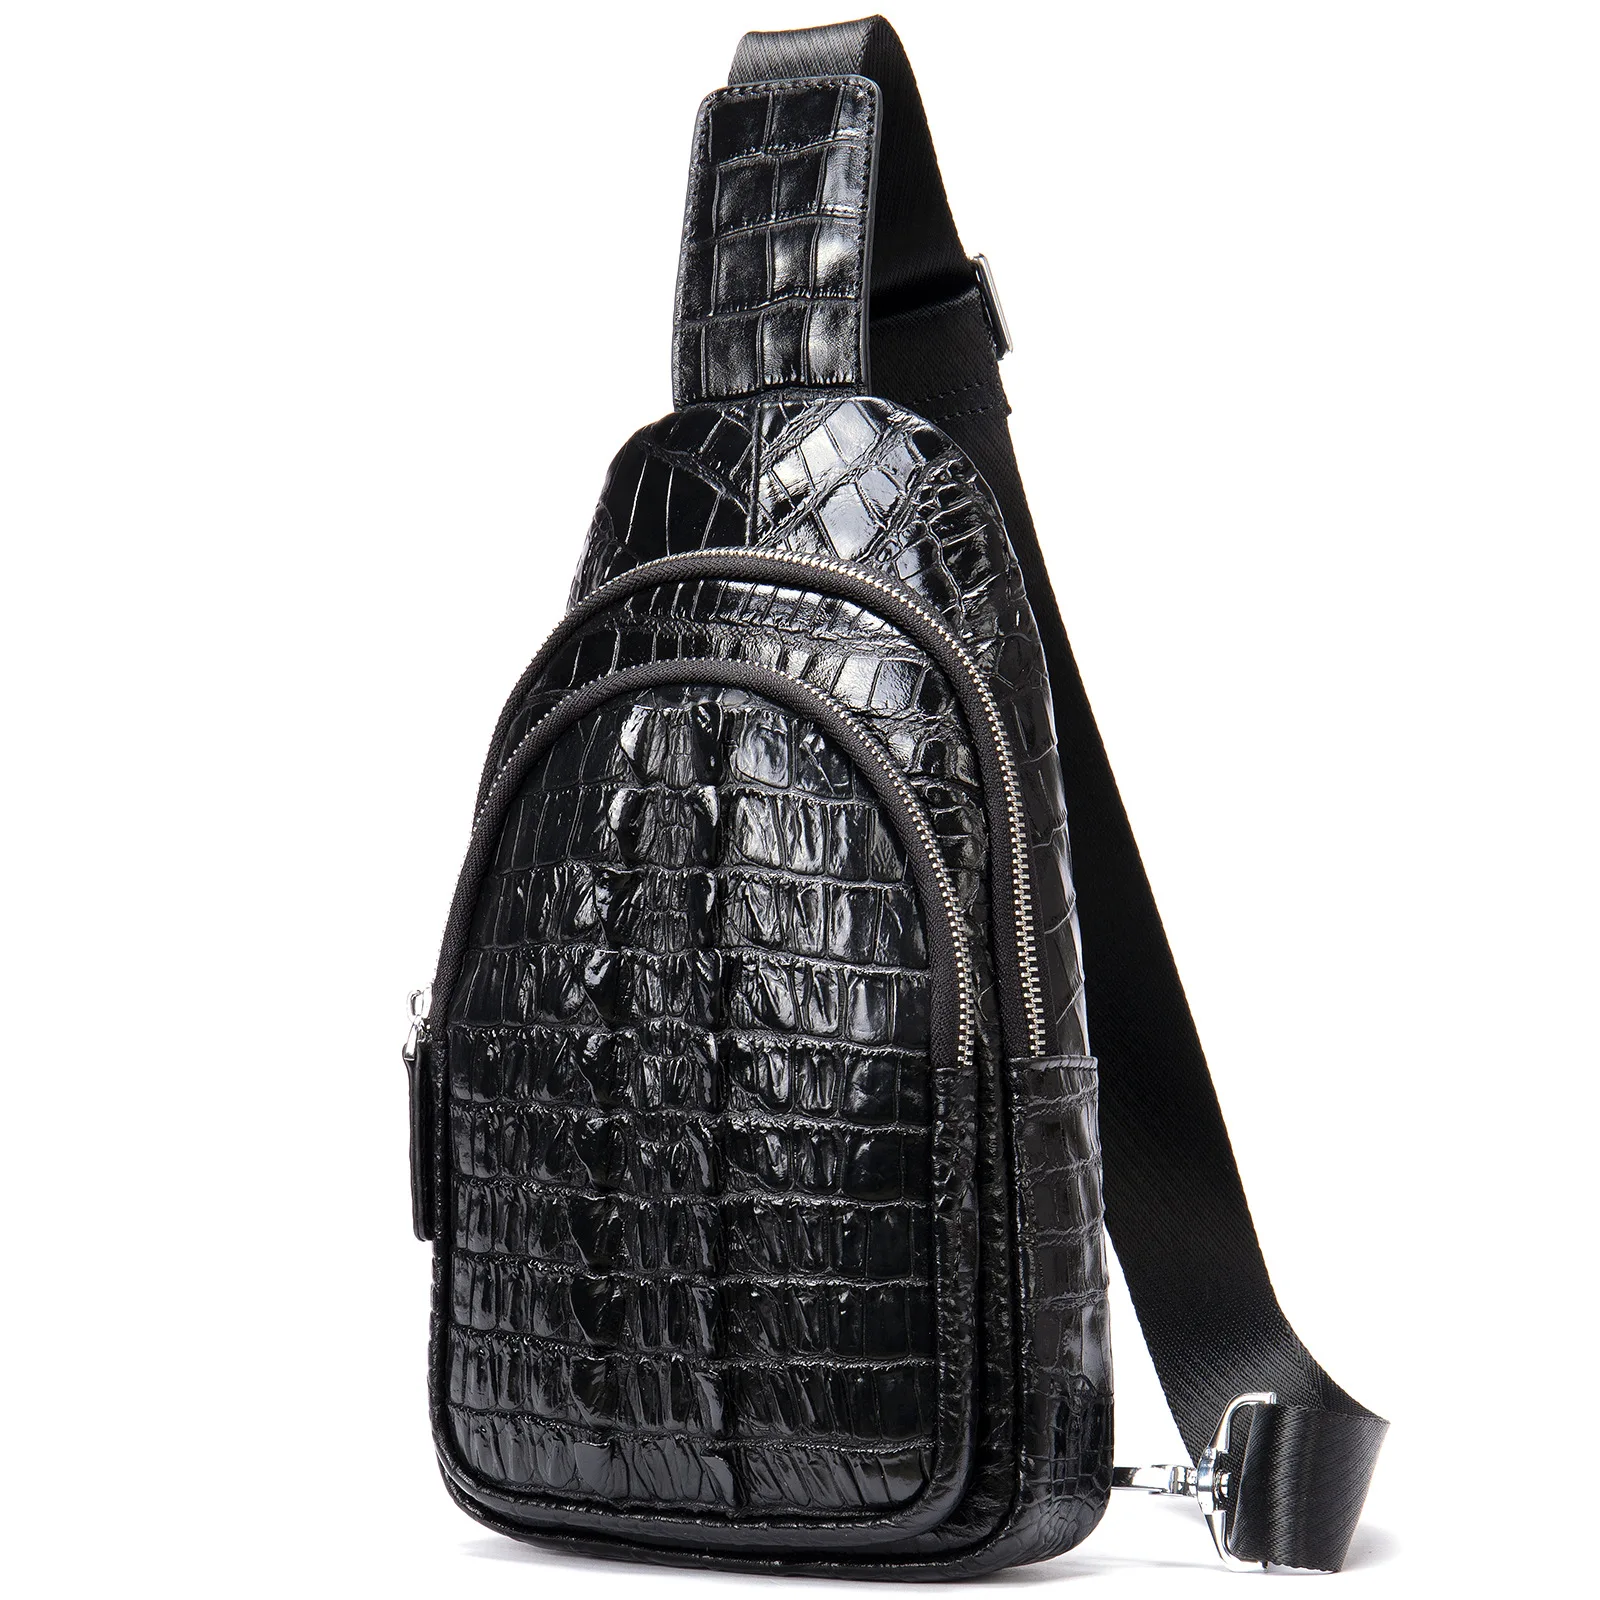 Мужская кожаная нагрудная сумка Легкий Роскошный дизайн с рисунком крокодиловой кожи Хвостовой плавник Многофункциональная сумка через плечо - 4